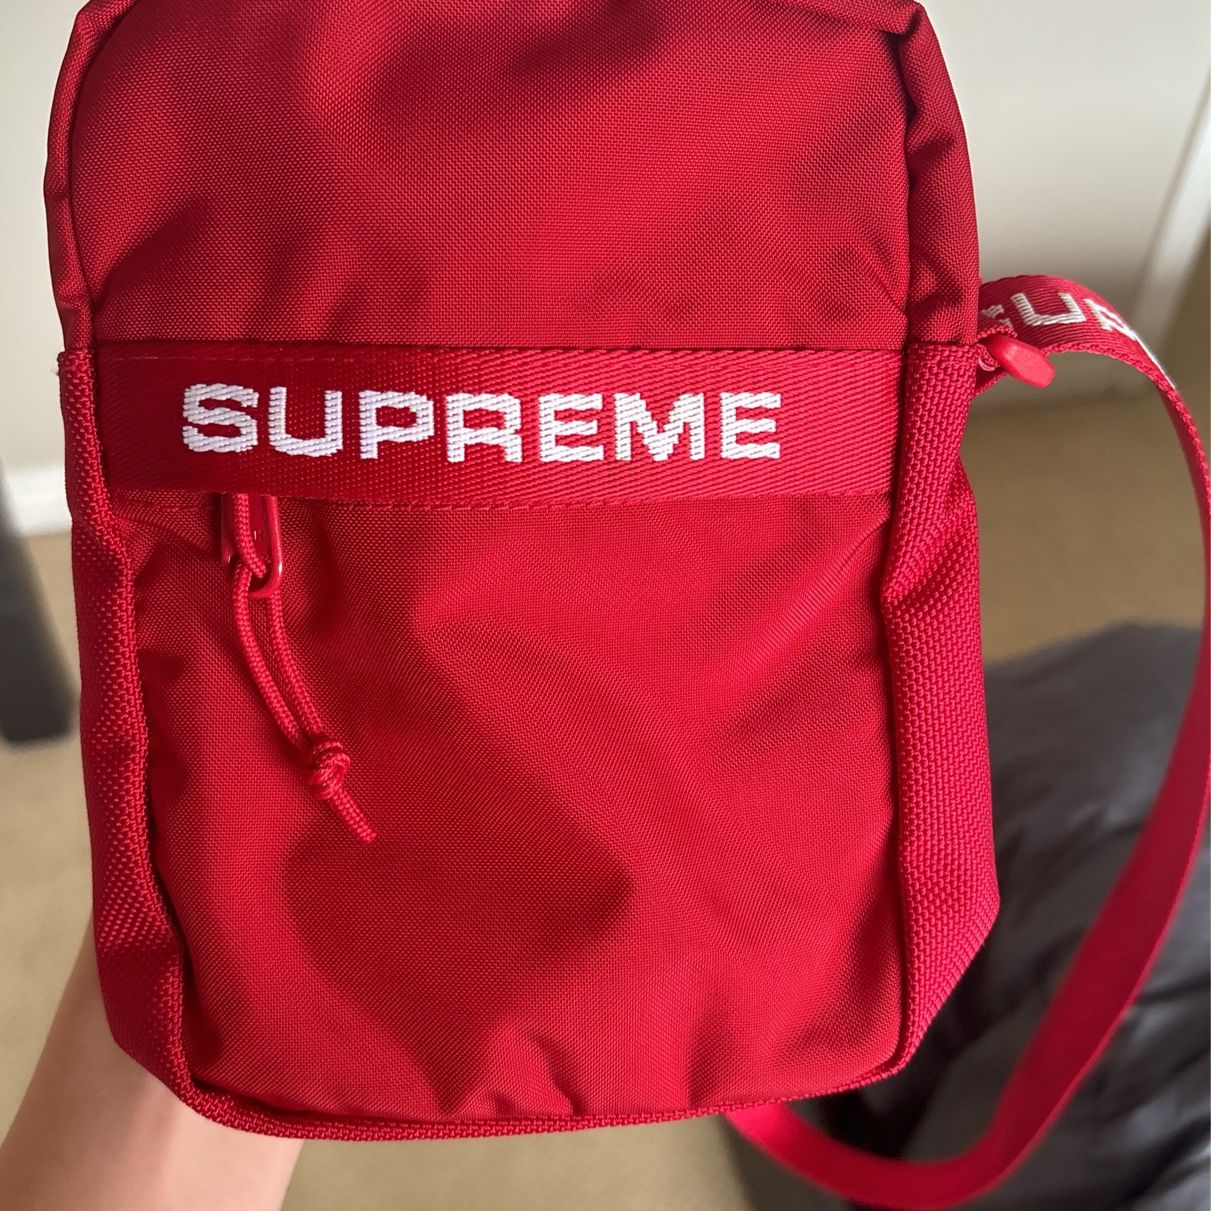 Red Supreme shoulder bag